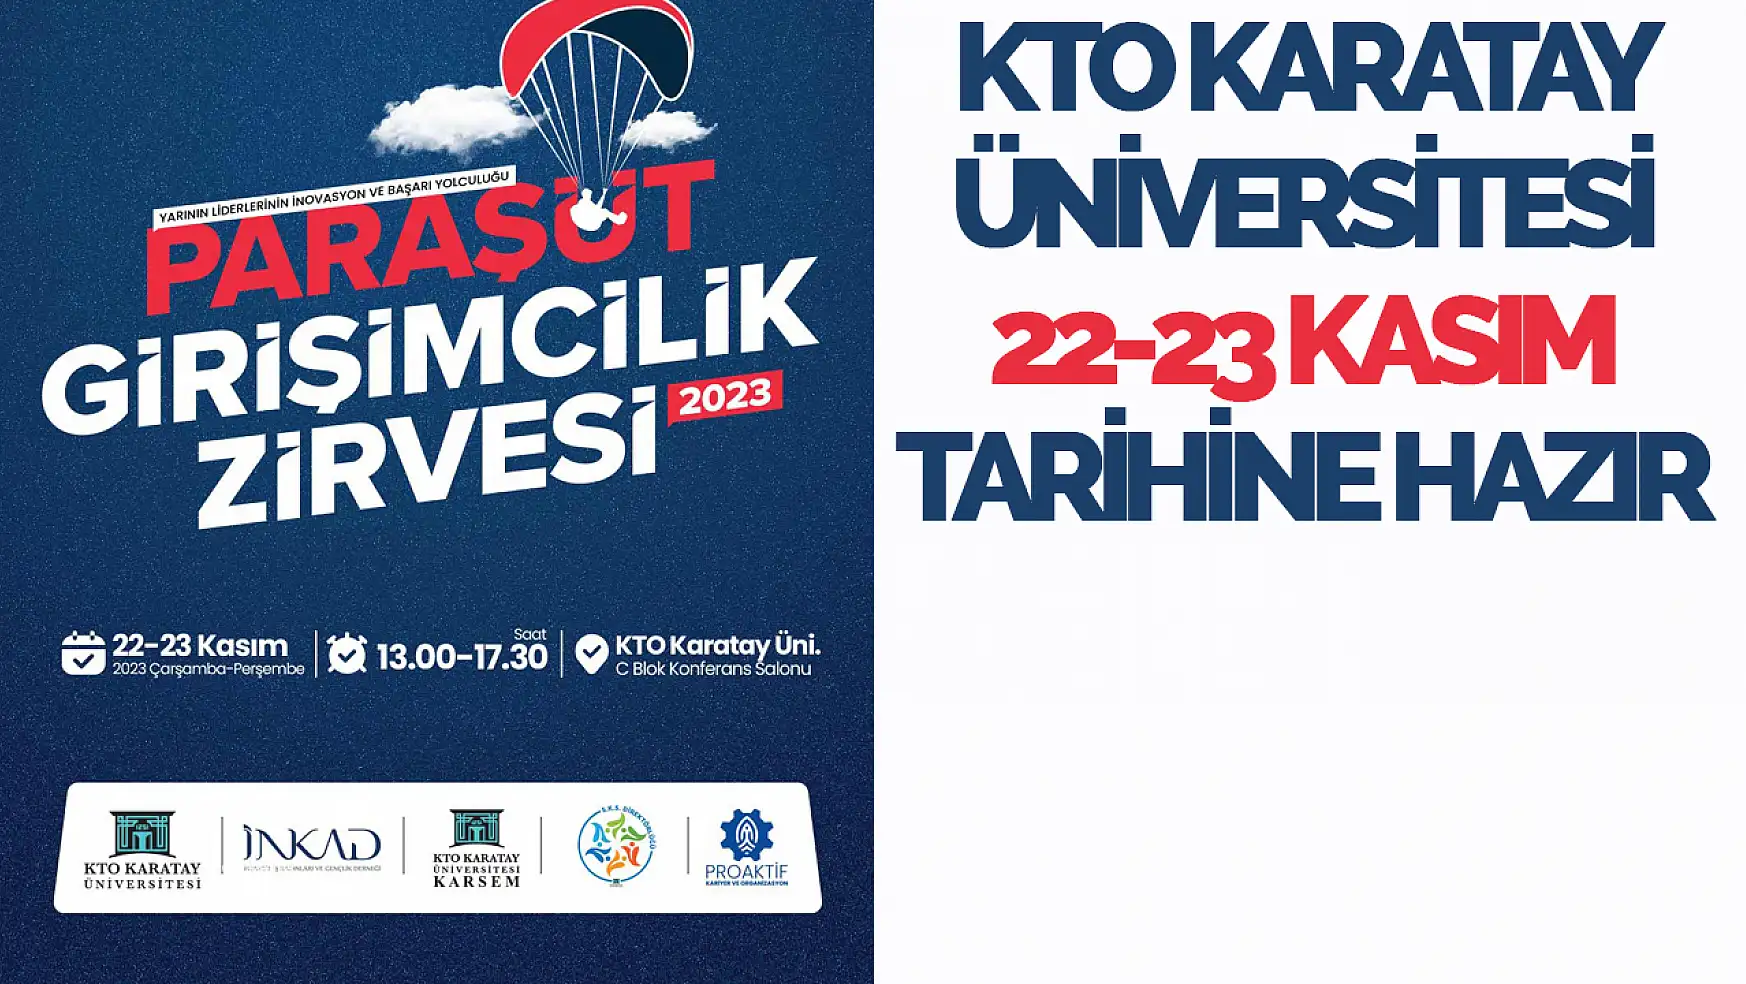 KTO Karatay Üniversitesi Paraşüt Girişimcilik Zirvesi 2023'e hazır